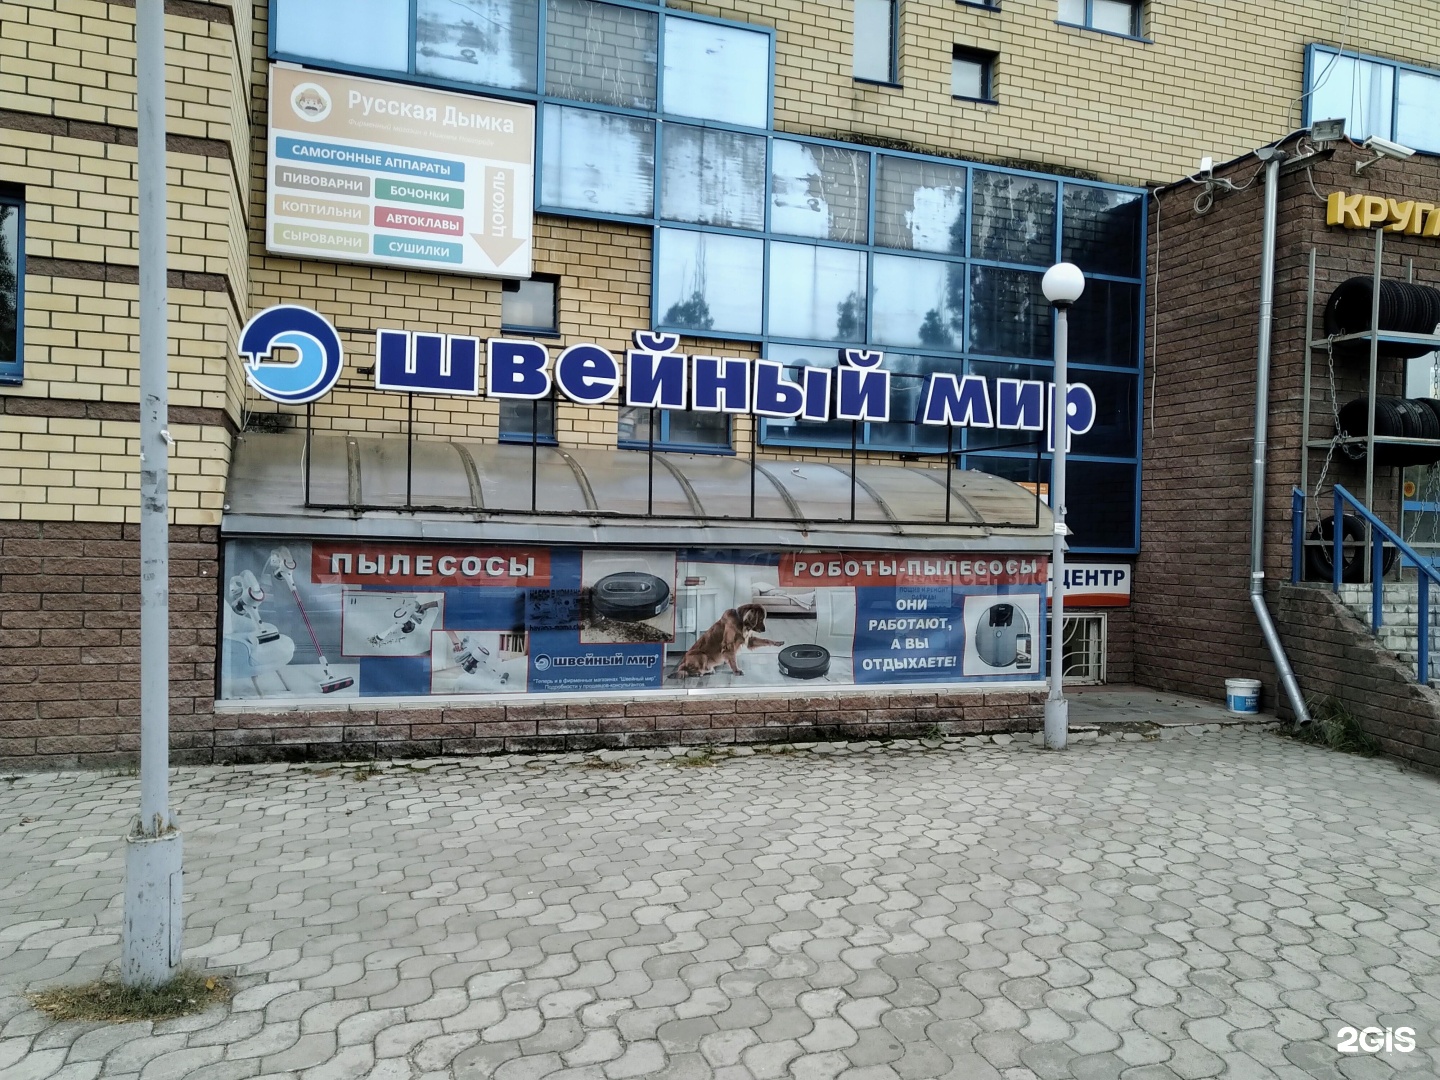 Швейный Магазин На Проспекте Ленина